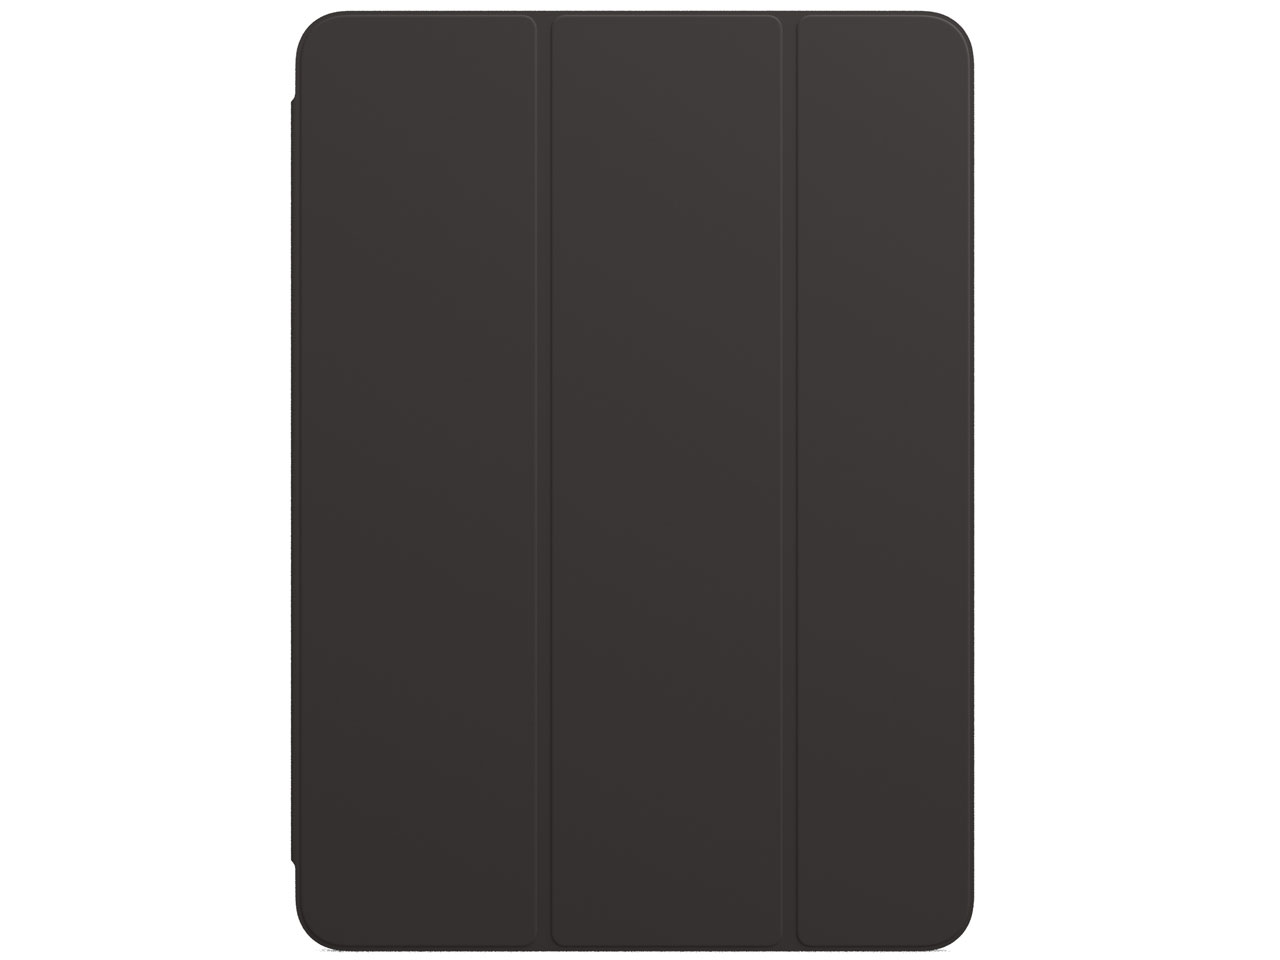 11インチiPad Pro(第3世代)用 Smart Folio MJM93FE/A [ブラック]